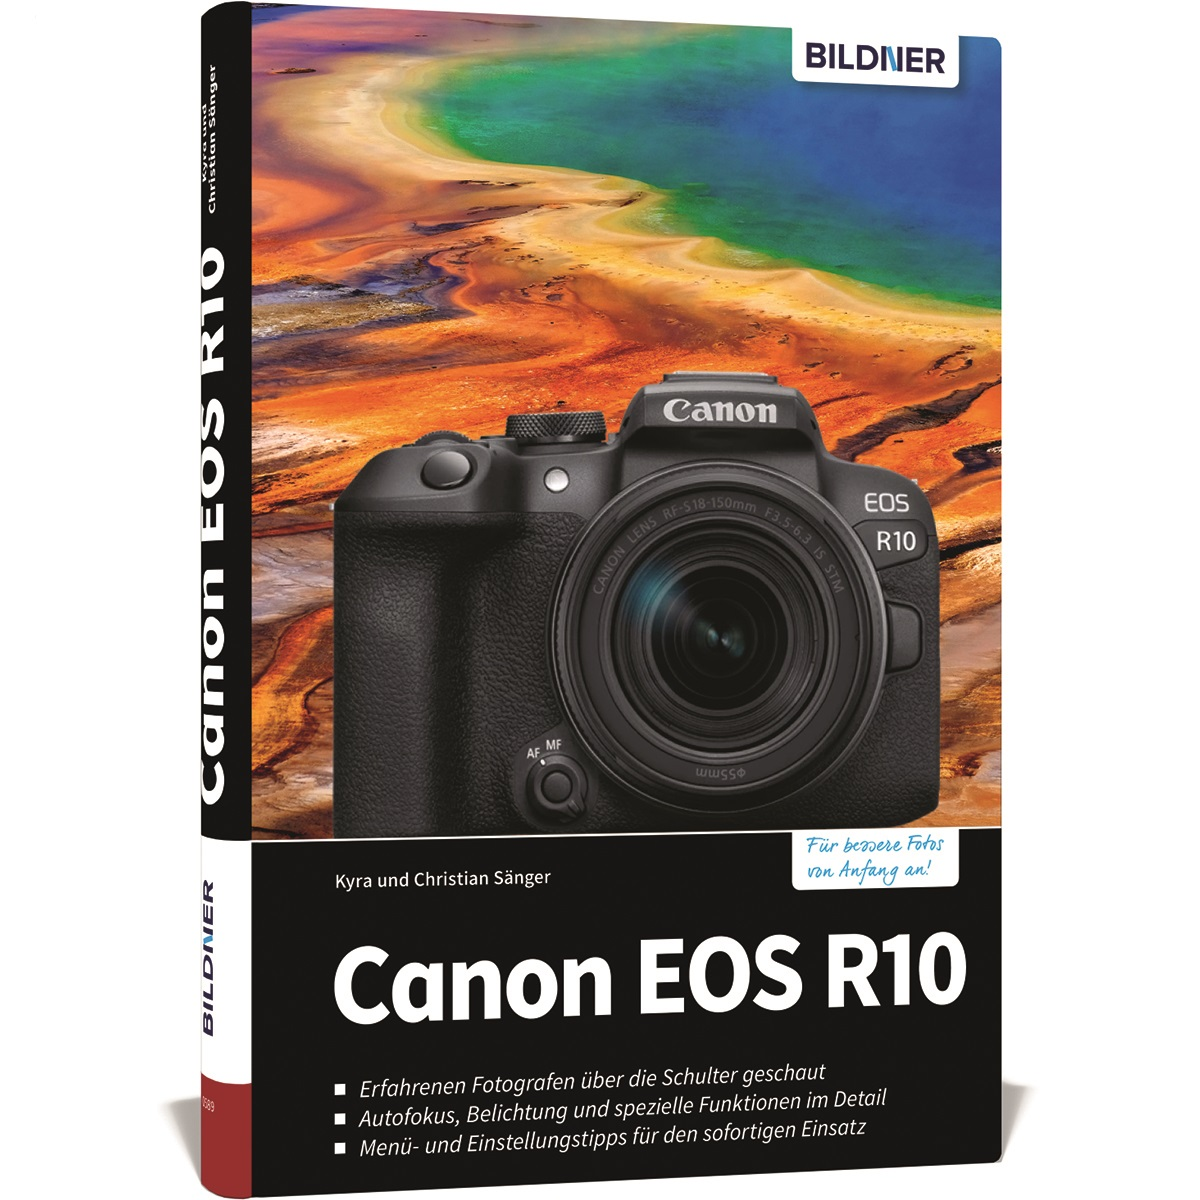 R10 Kamera EOS Canon - Ihrer umfangreiche zu Das Praxisbuch